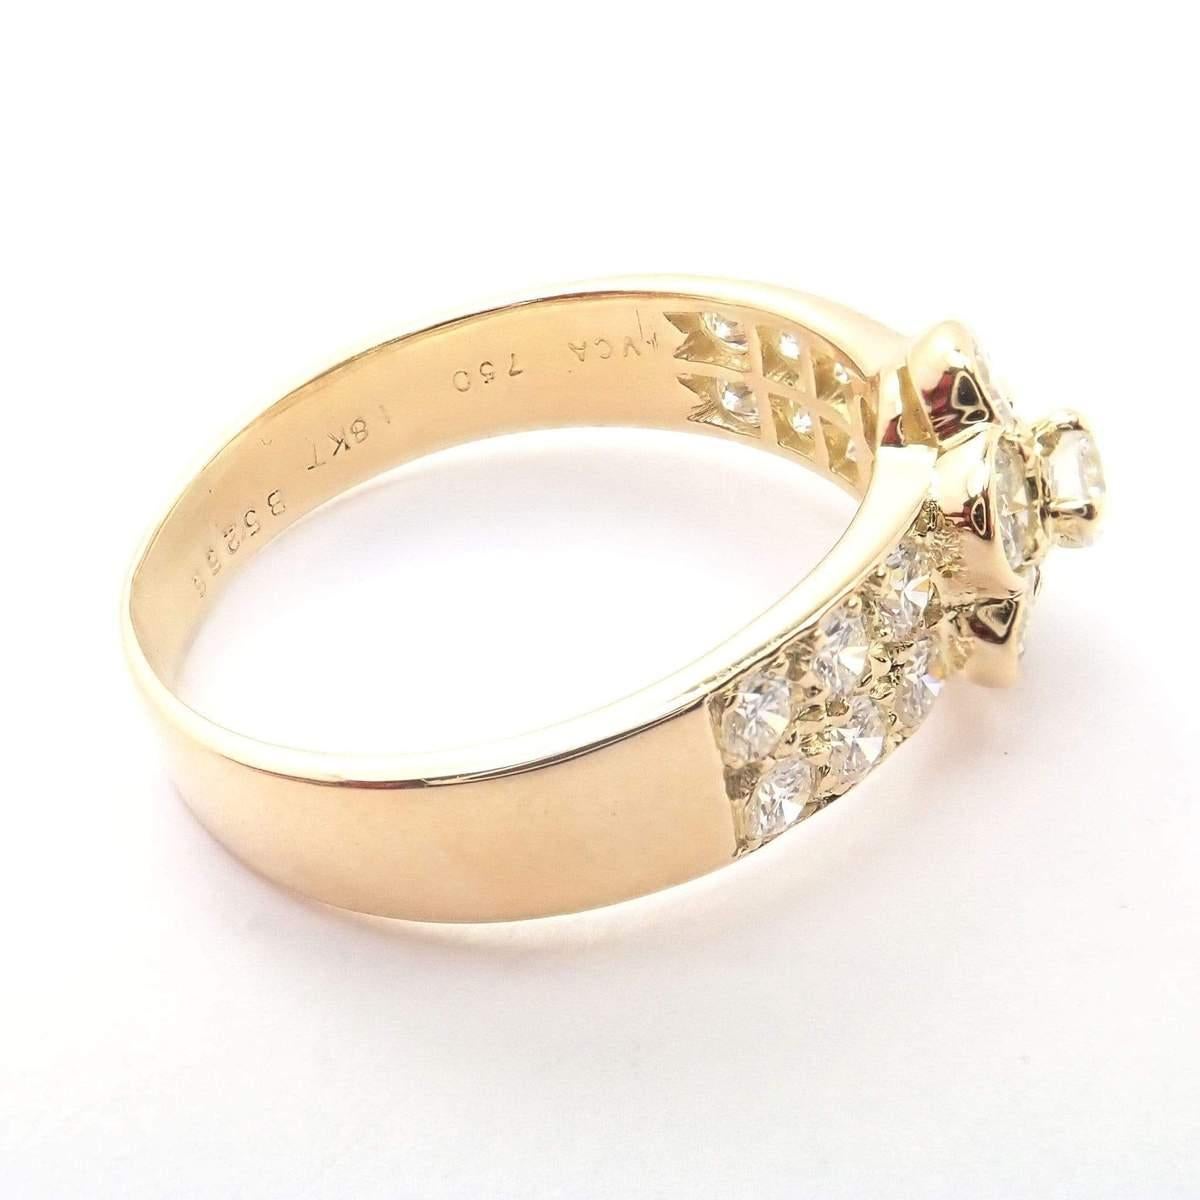 Van Cleef & Arpels 18k Gelbgold Diamant Fleurette Ring. 
Mit 1,11 Karat Gesamtgewicht an Diamanten. 

Metall: 18k Gelbgold
Ringgröße: 7 (Größenänderung möglich) 
Breite an der Spitze: 9mm
Gewicht: 3,7 Gramm
Steine: 19 Diamanten
Reinheit VS1, Farbe